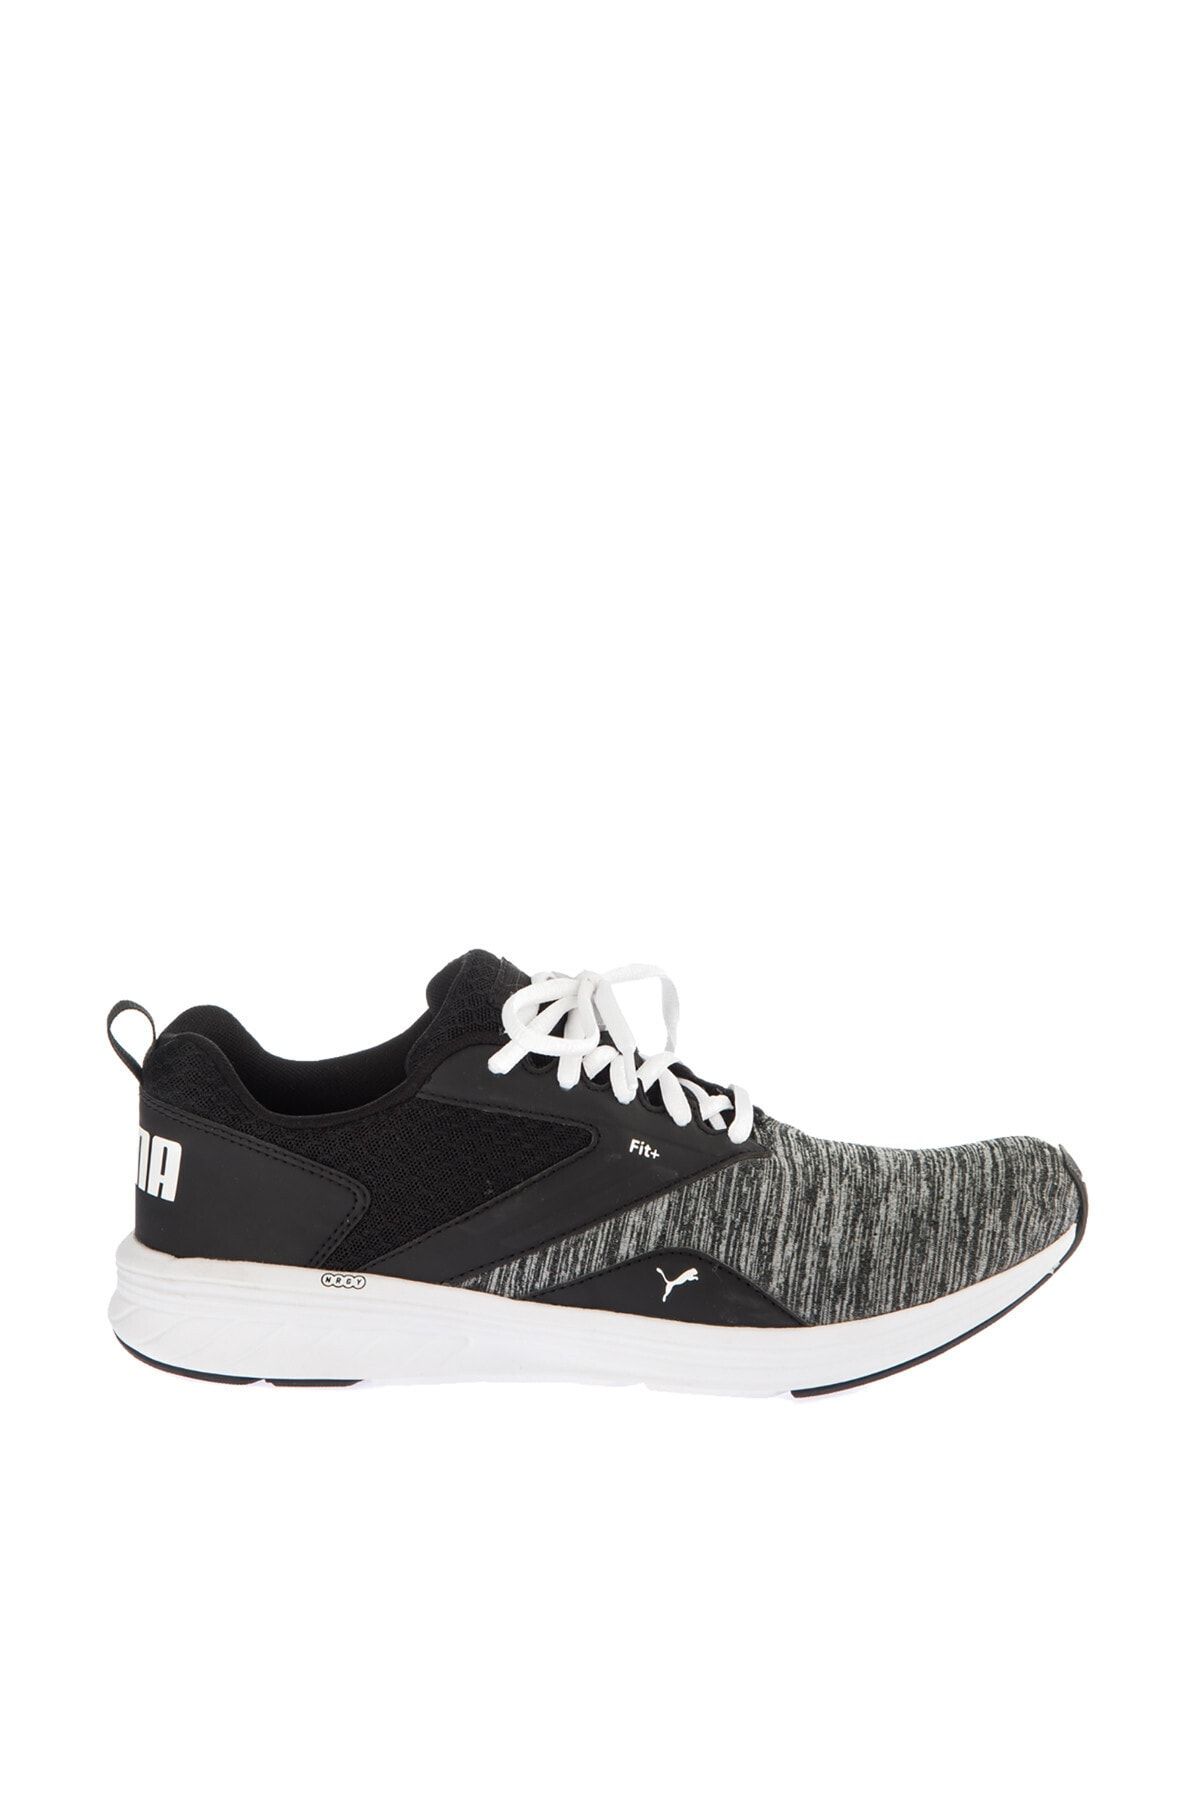 Puma Nrgy Comet Beyaz Siyah Kadın Sneaker Ayakkabı 100351343